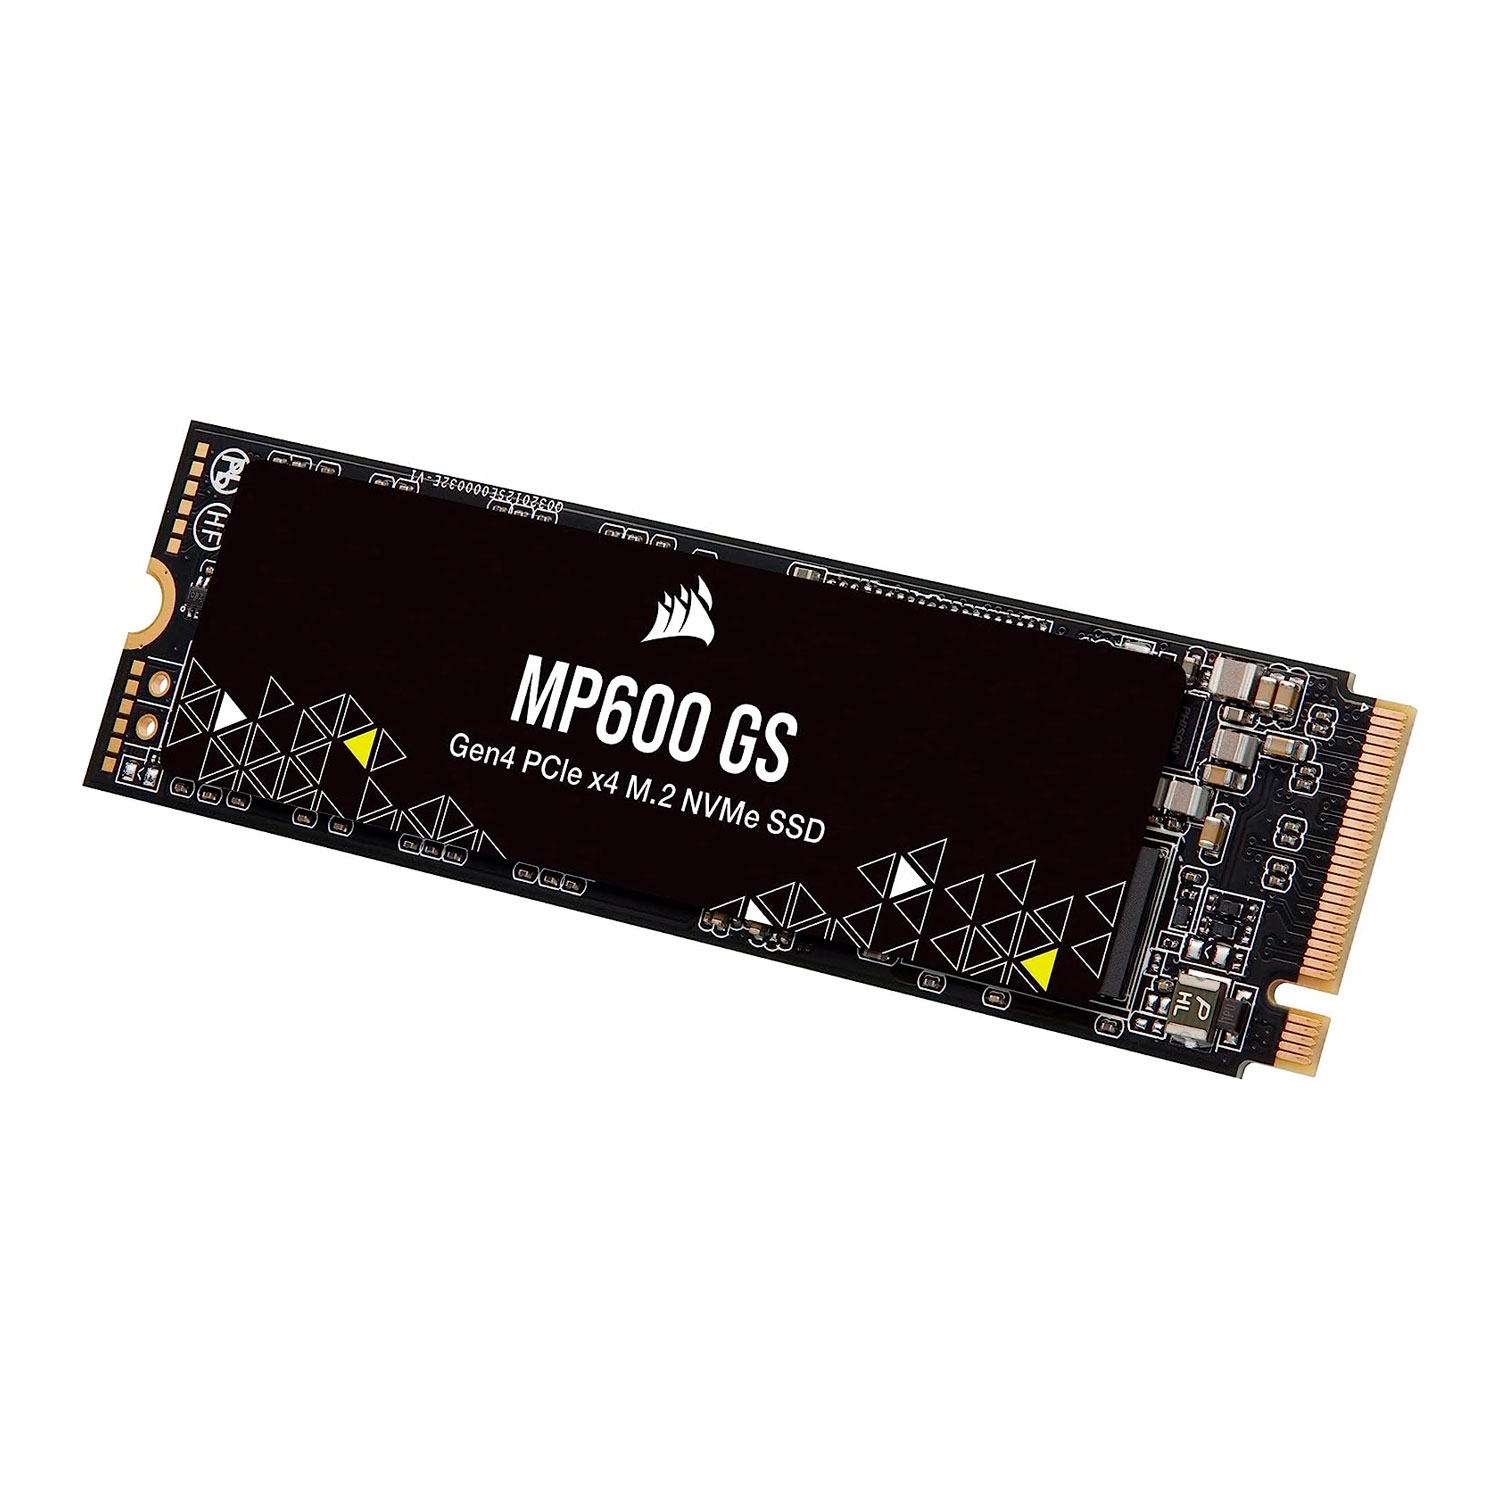 SSD M.2 Corsair MP600 1TB NVMe PCIe Gen 4 - CSSD-F1000GBMP600GS
